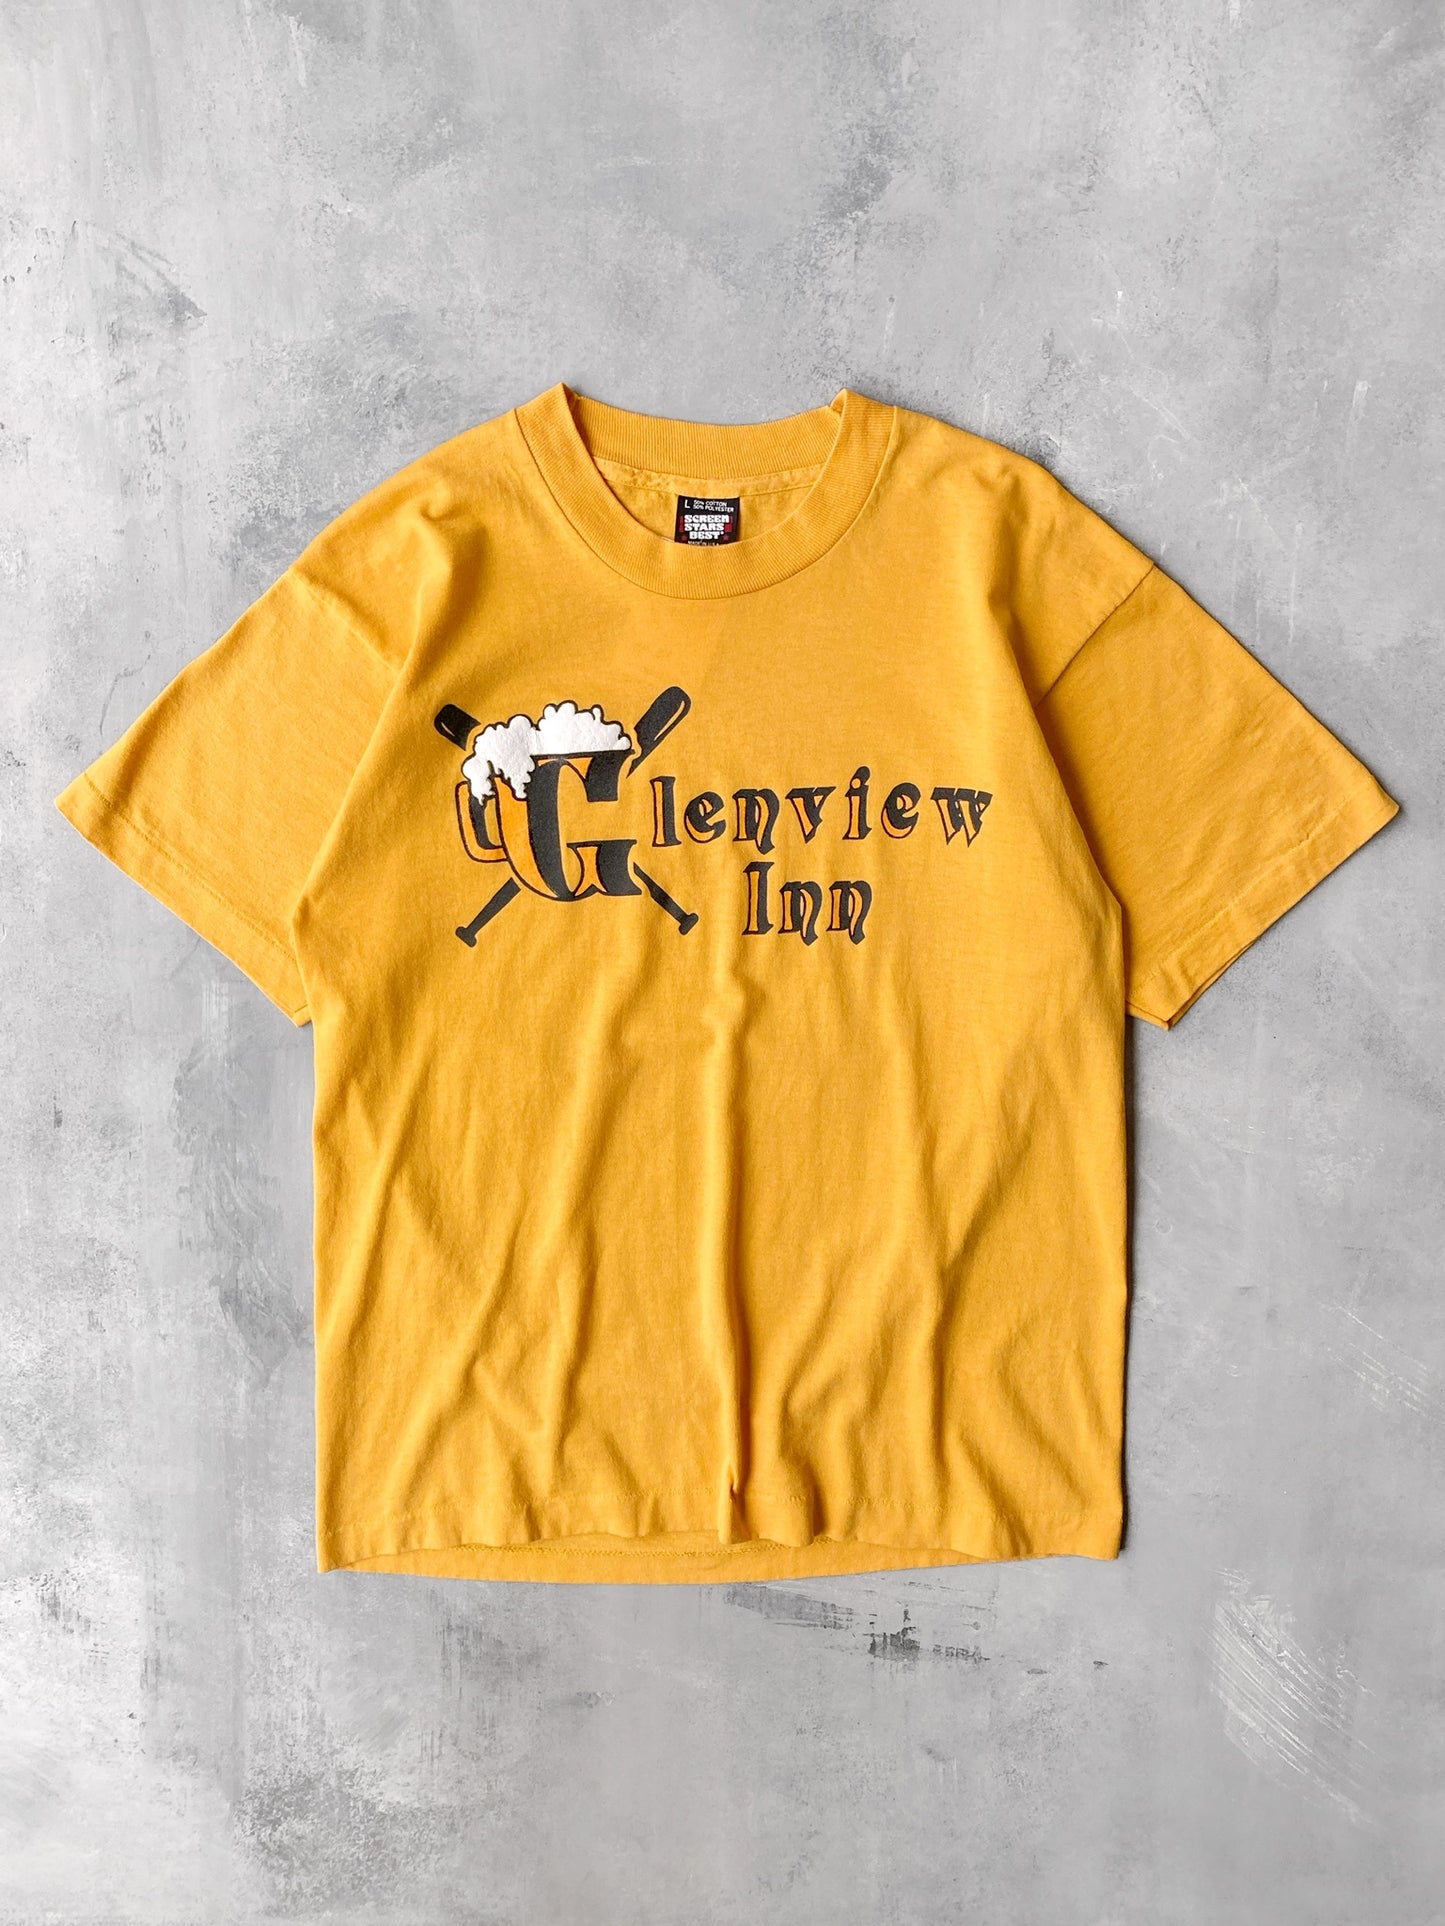 Glenview Inn T-Shirt 90's - Medium / Large